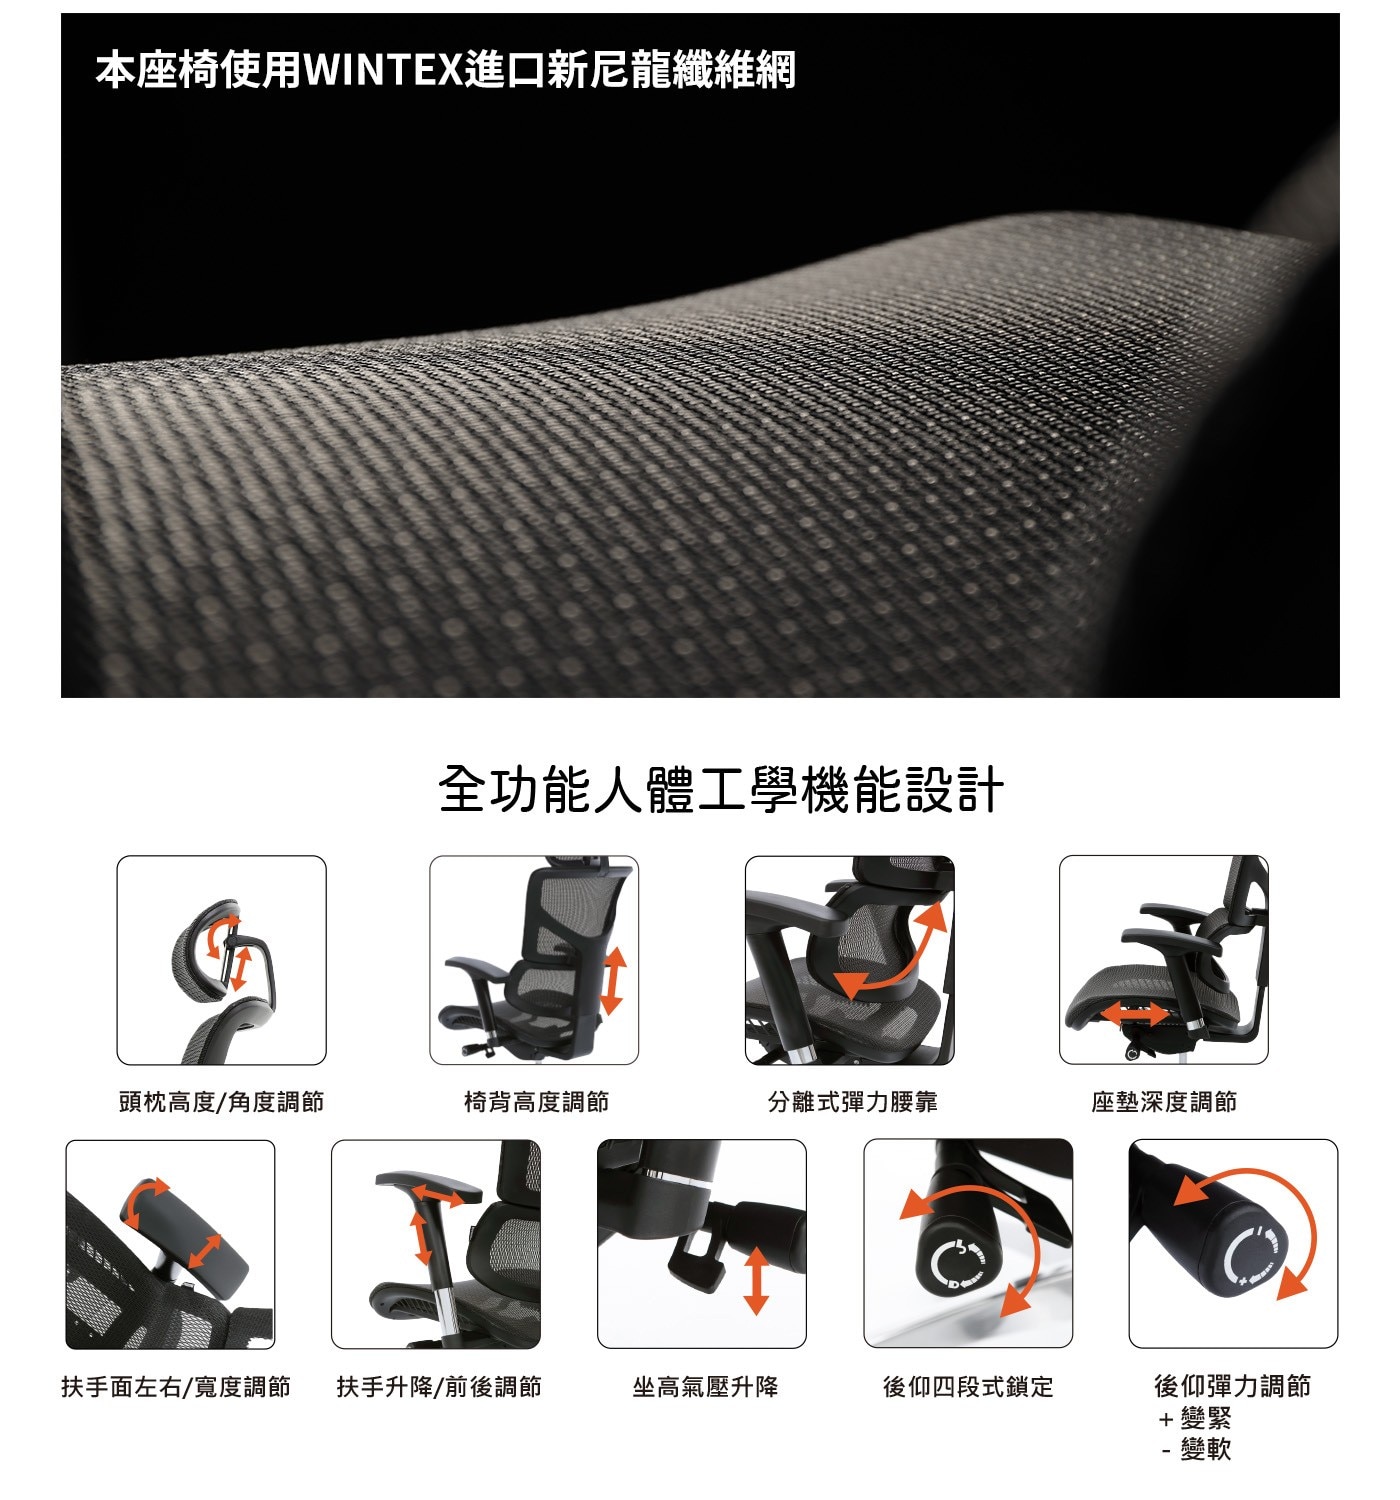 Ergoking 全功能加大網布人體工學椅 171 S Plus系列座椅使用wintex尼龍纖維網綿密止滑親合肌膚，高張力彈性佳。